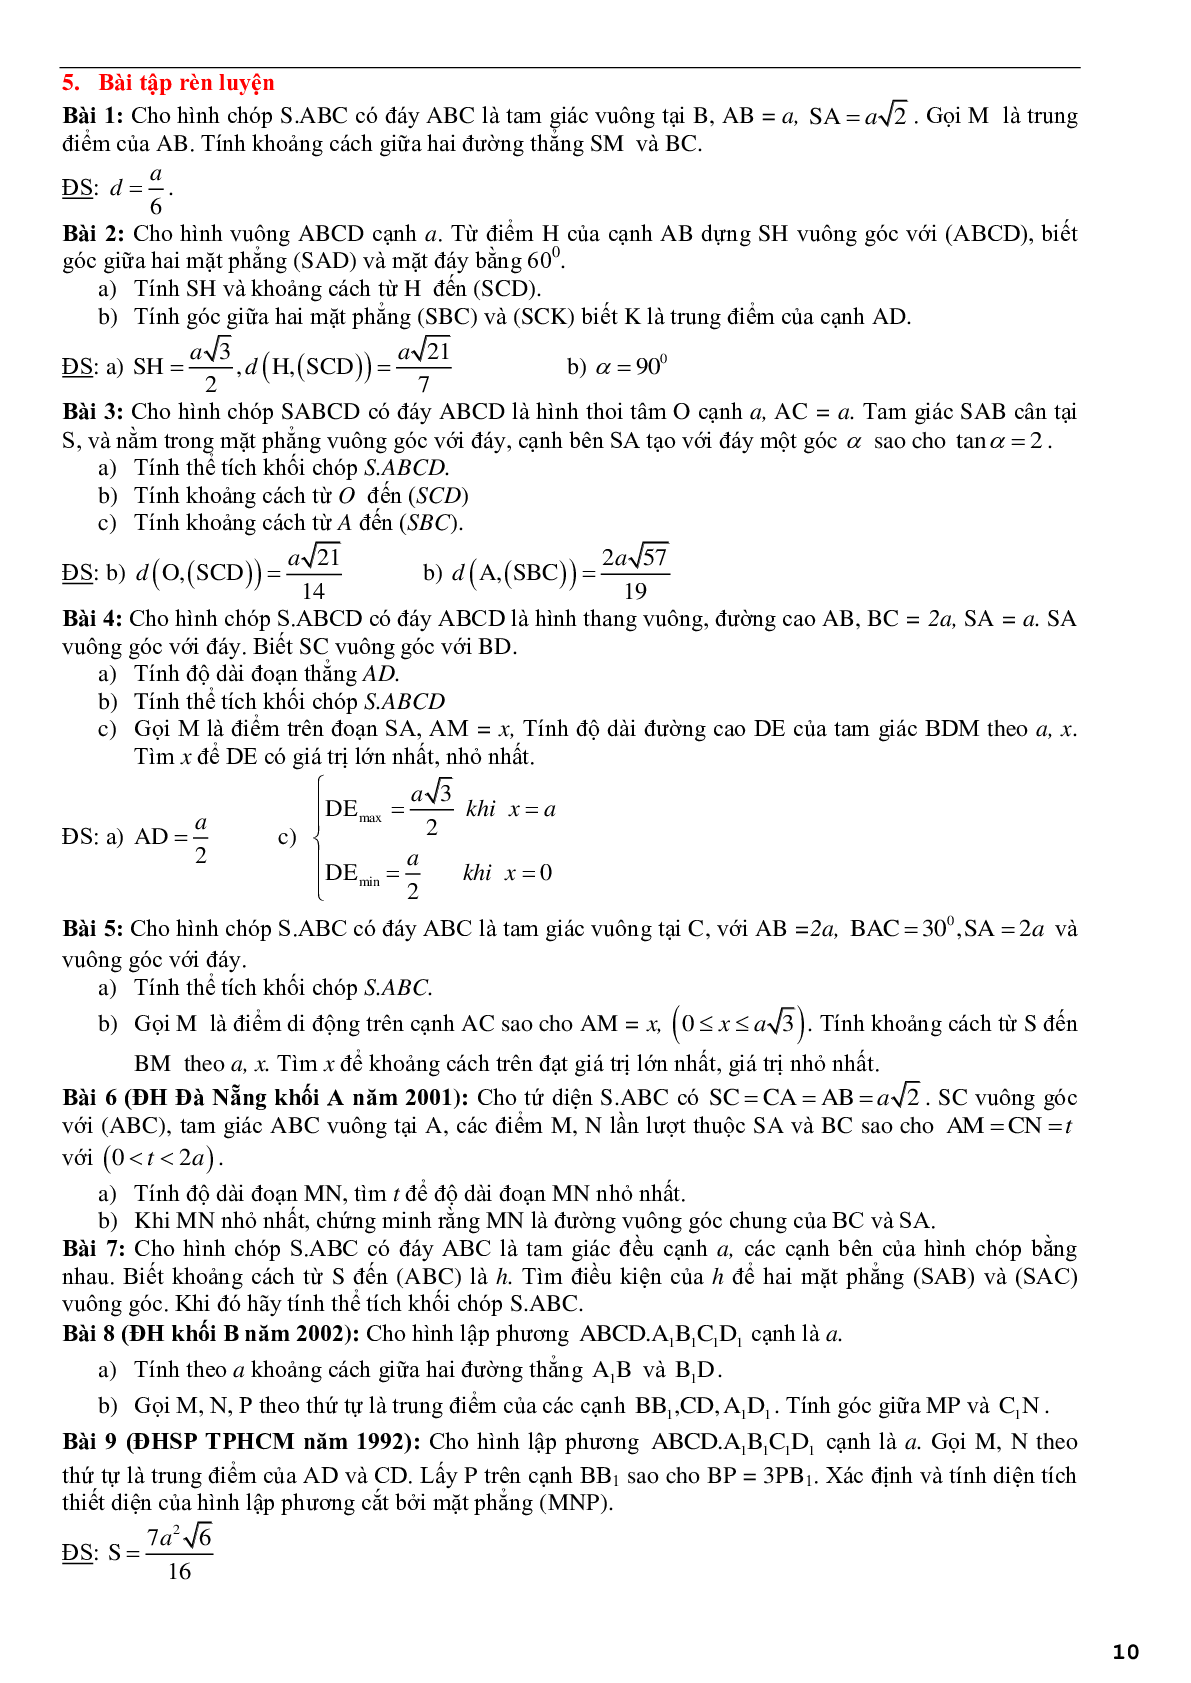 Ứng dụng phương pháp tọa độ để giải bài toán hình học không gian - phần 2 (trang 10)